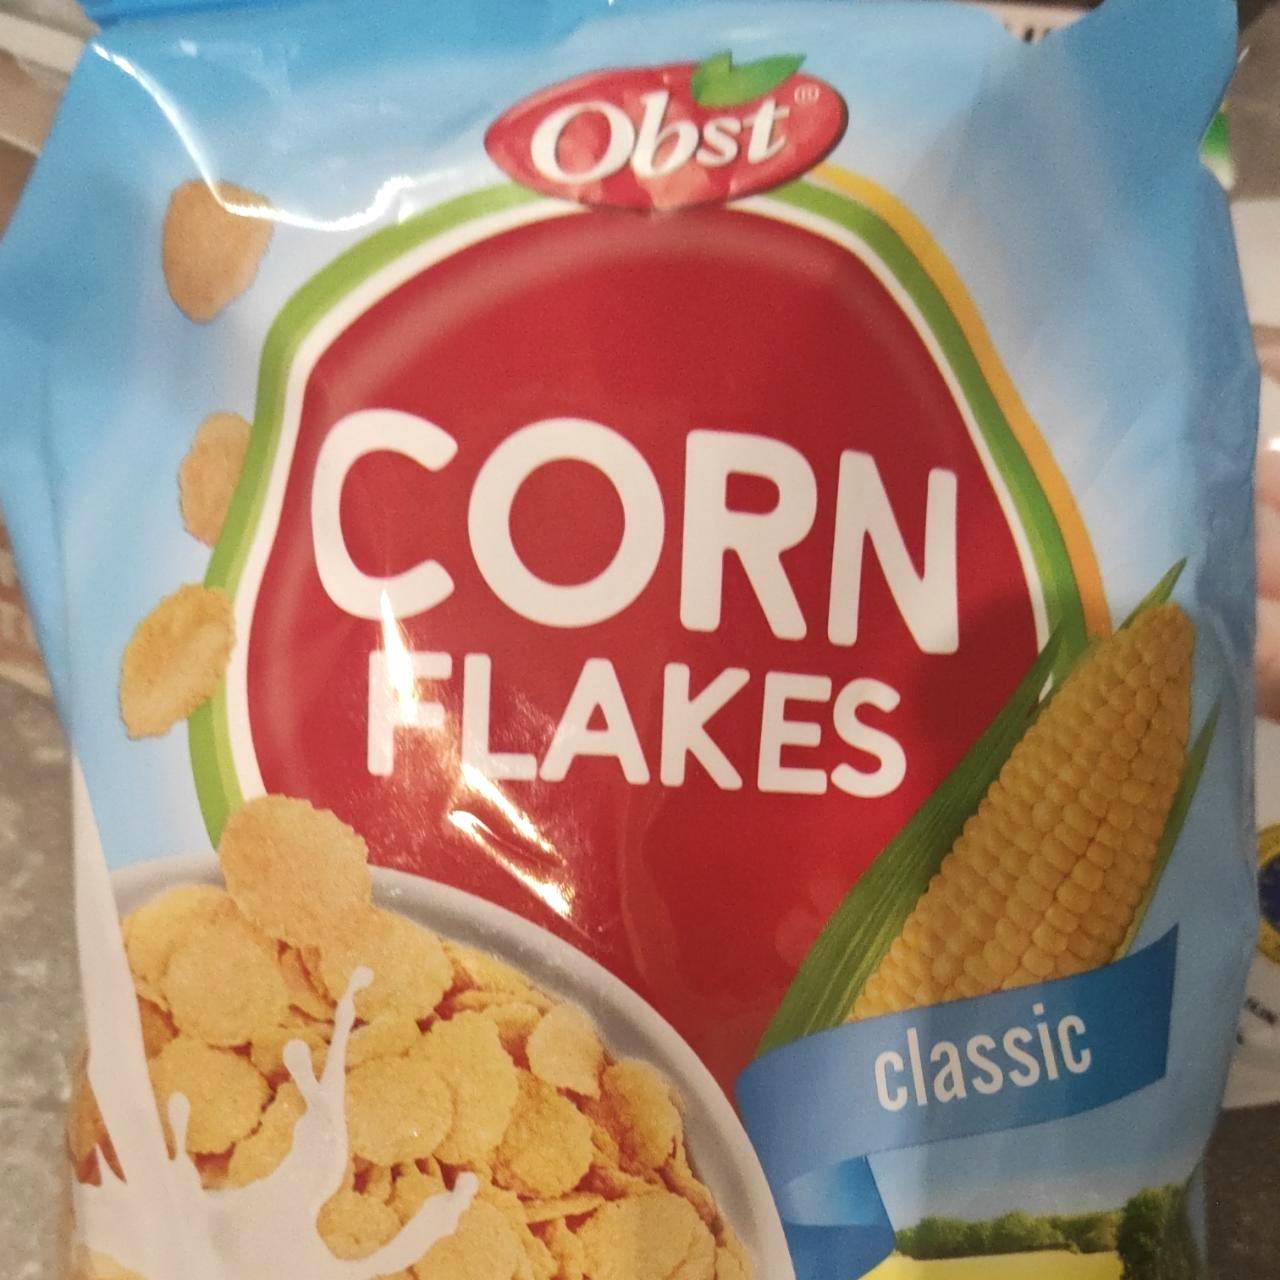 Képek - Corn flakes Classic Obst